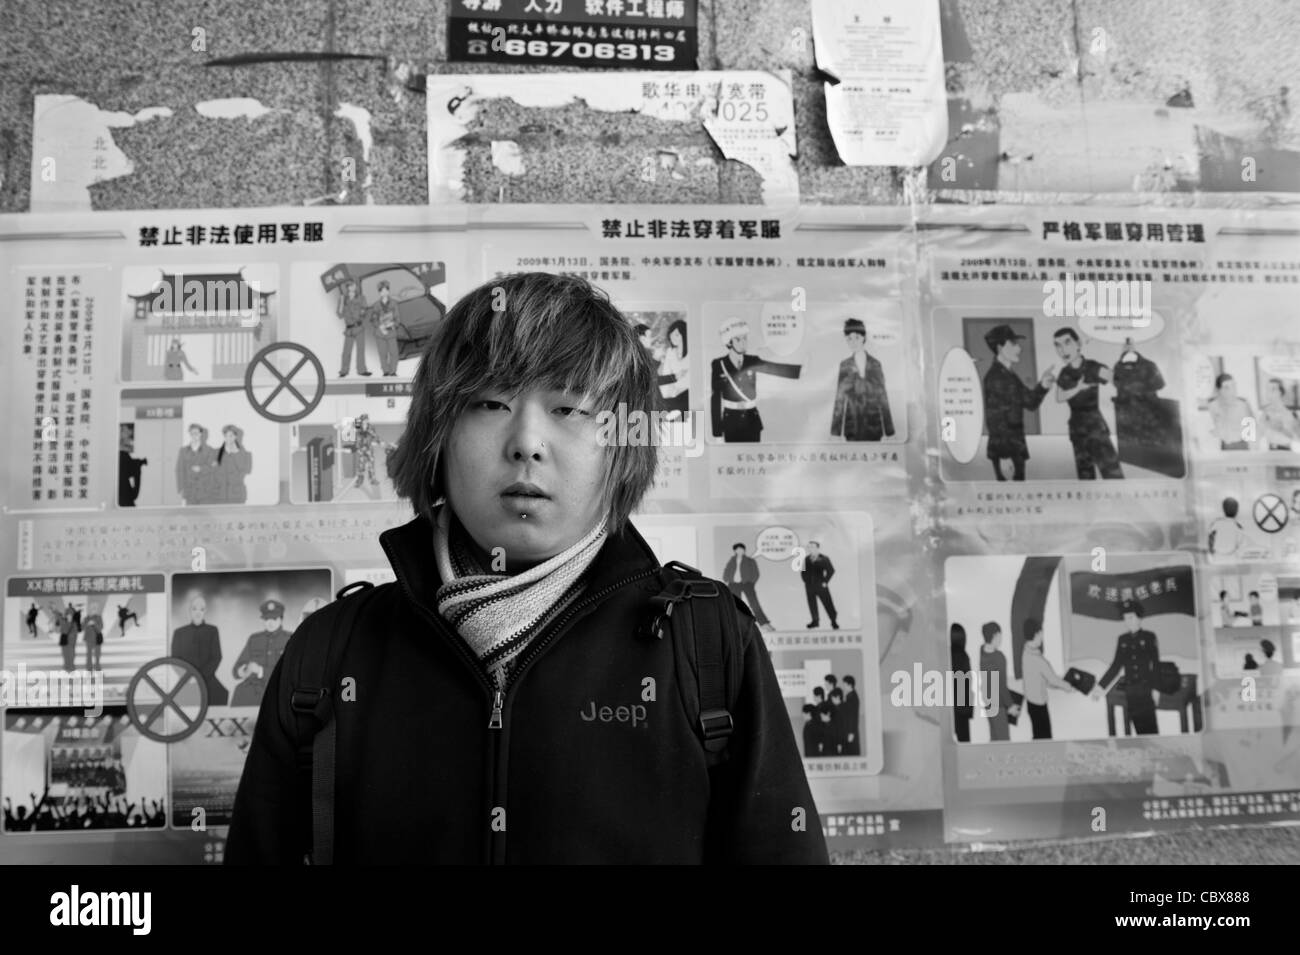 Beijin. Dong-Nan, Gitarrist in der Straße-Punk-Band "Warum Vernunft", vor dem Gebote und Verbote Plakat der Regierung. Stockfoto